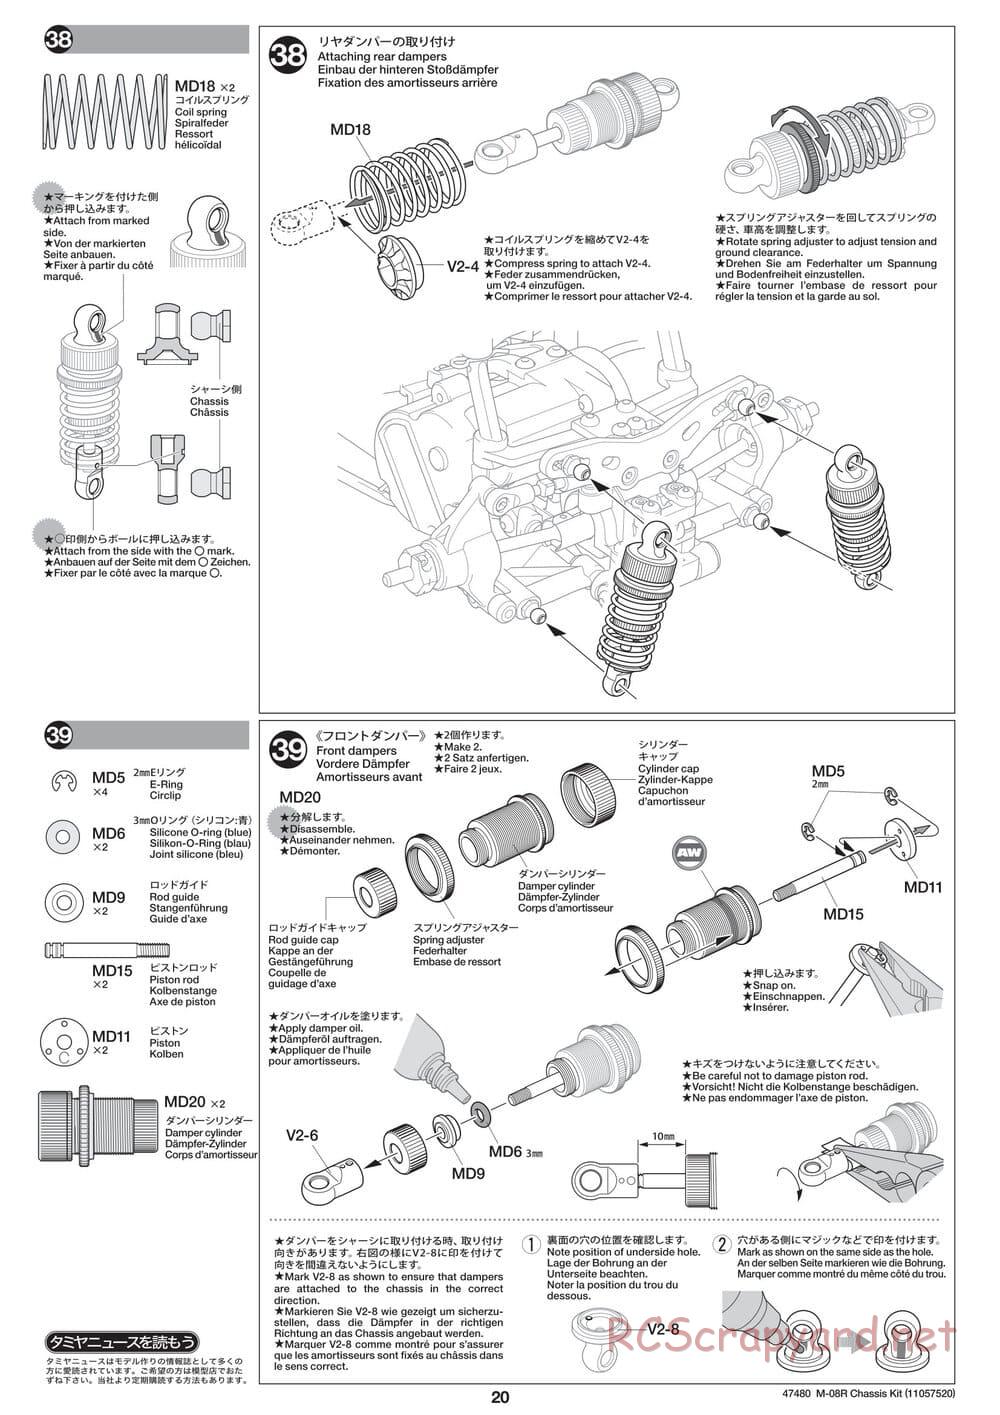 Tamiya - M-08R Chassis - Manual - Page 20